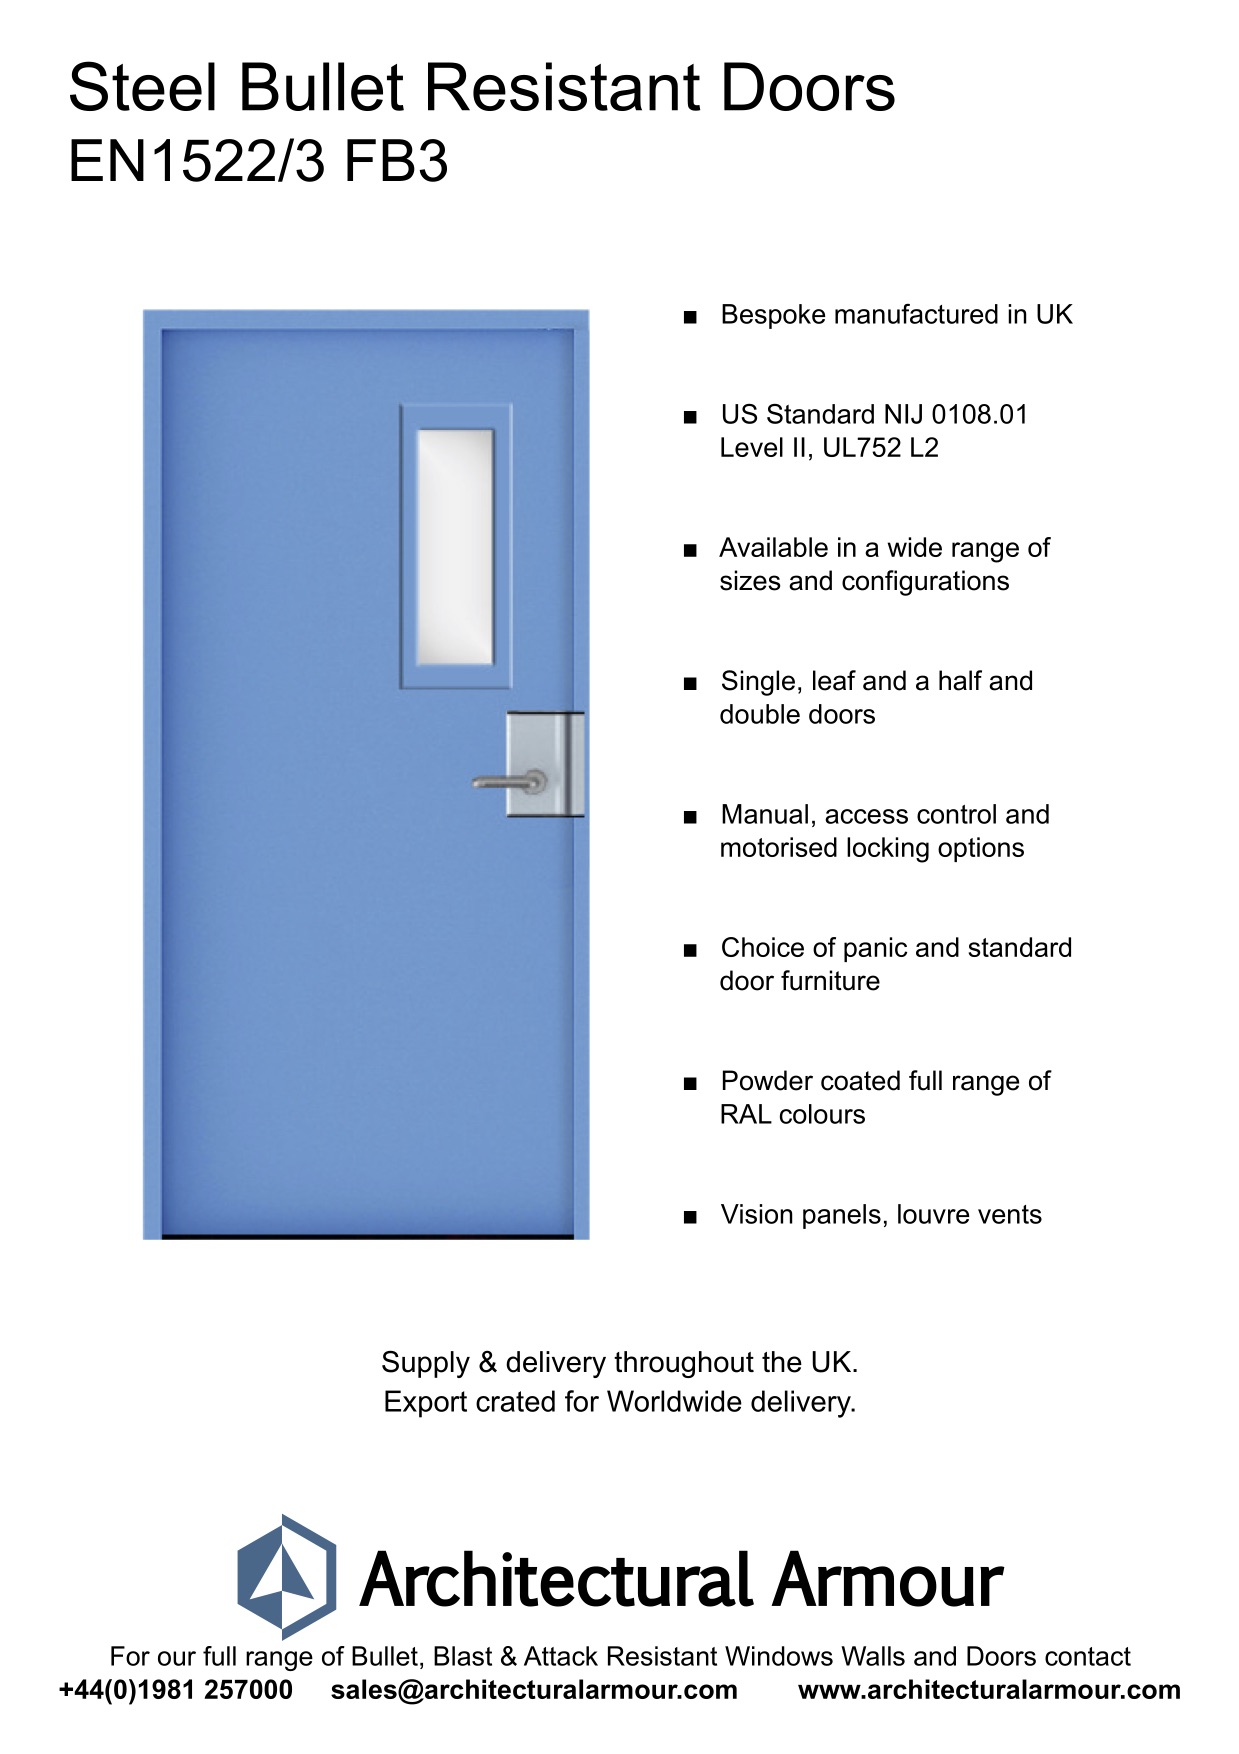 EN1522-3-FB3-Single-Slim-Vision-Panel-Bullet-Resistant-Steel-Door